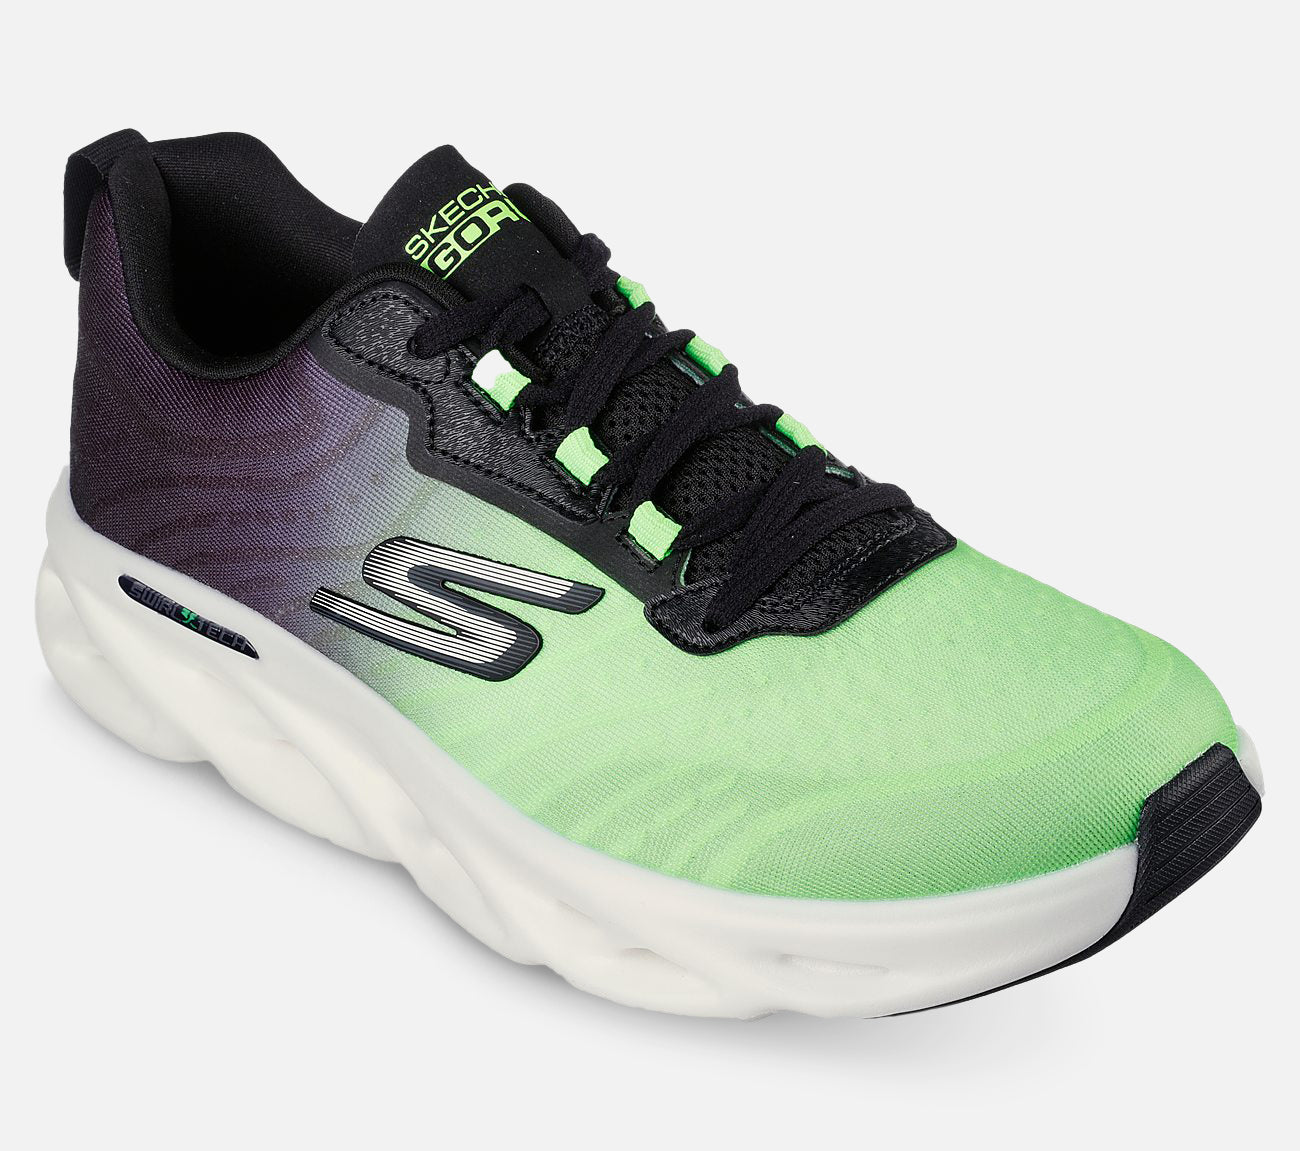 GO RUN Swirl Tech Speed - Top Level Shoe Skechers